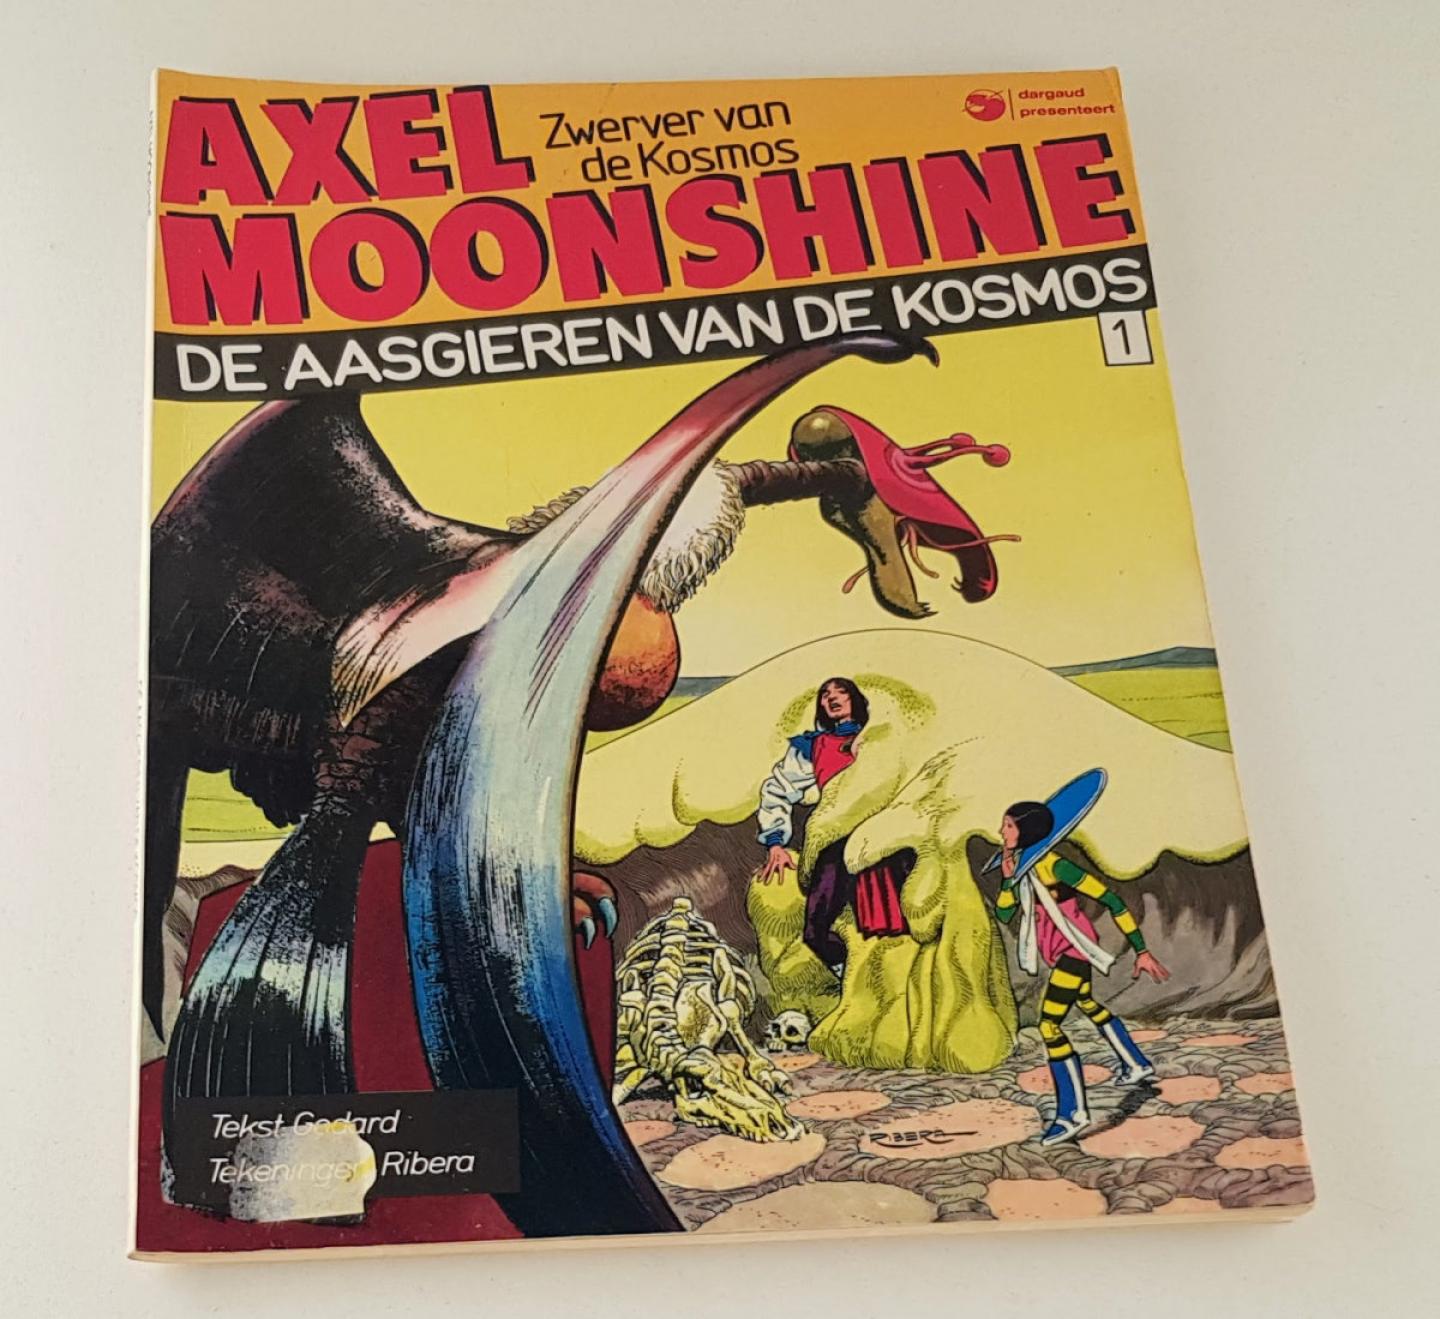 Godard / Ribera - Axel Moonshine 1 De aasgieren van de kosmos